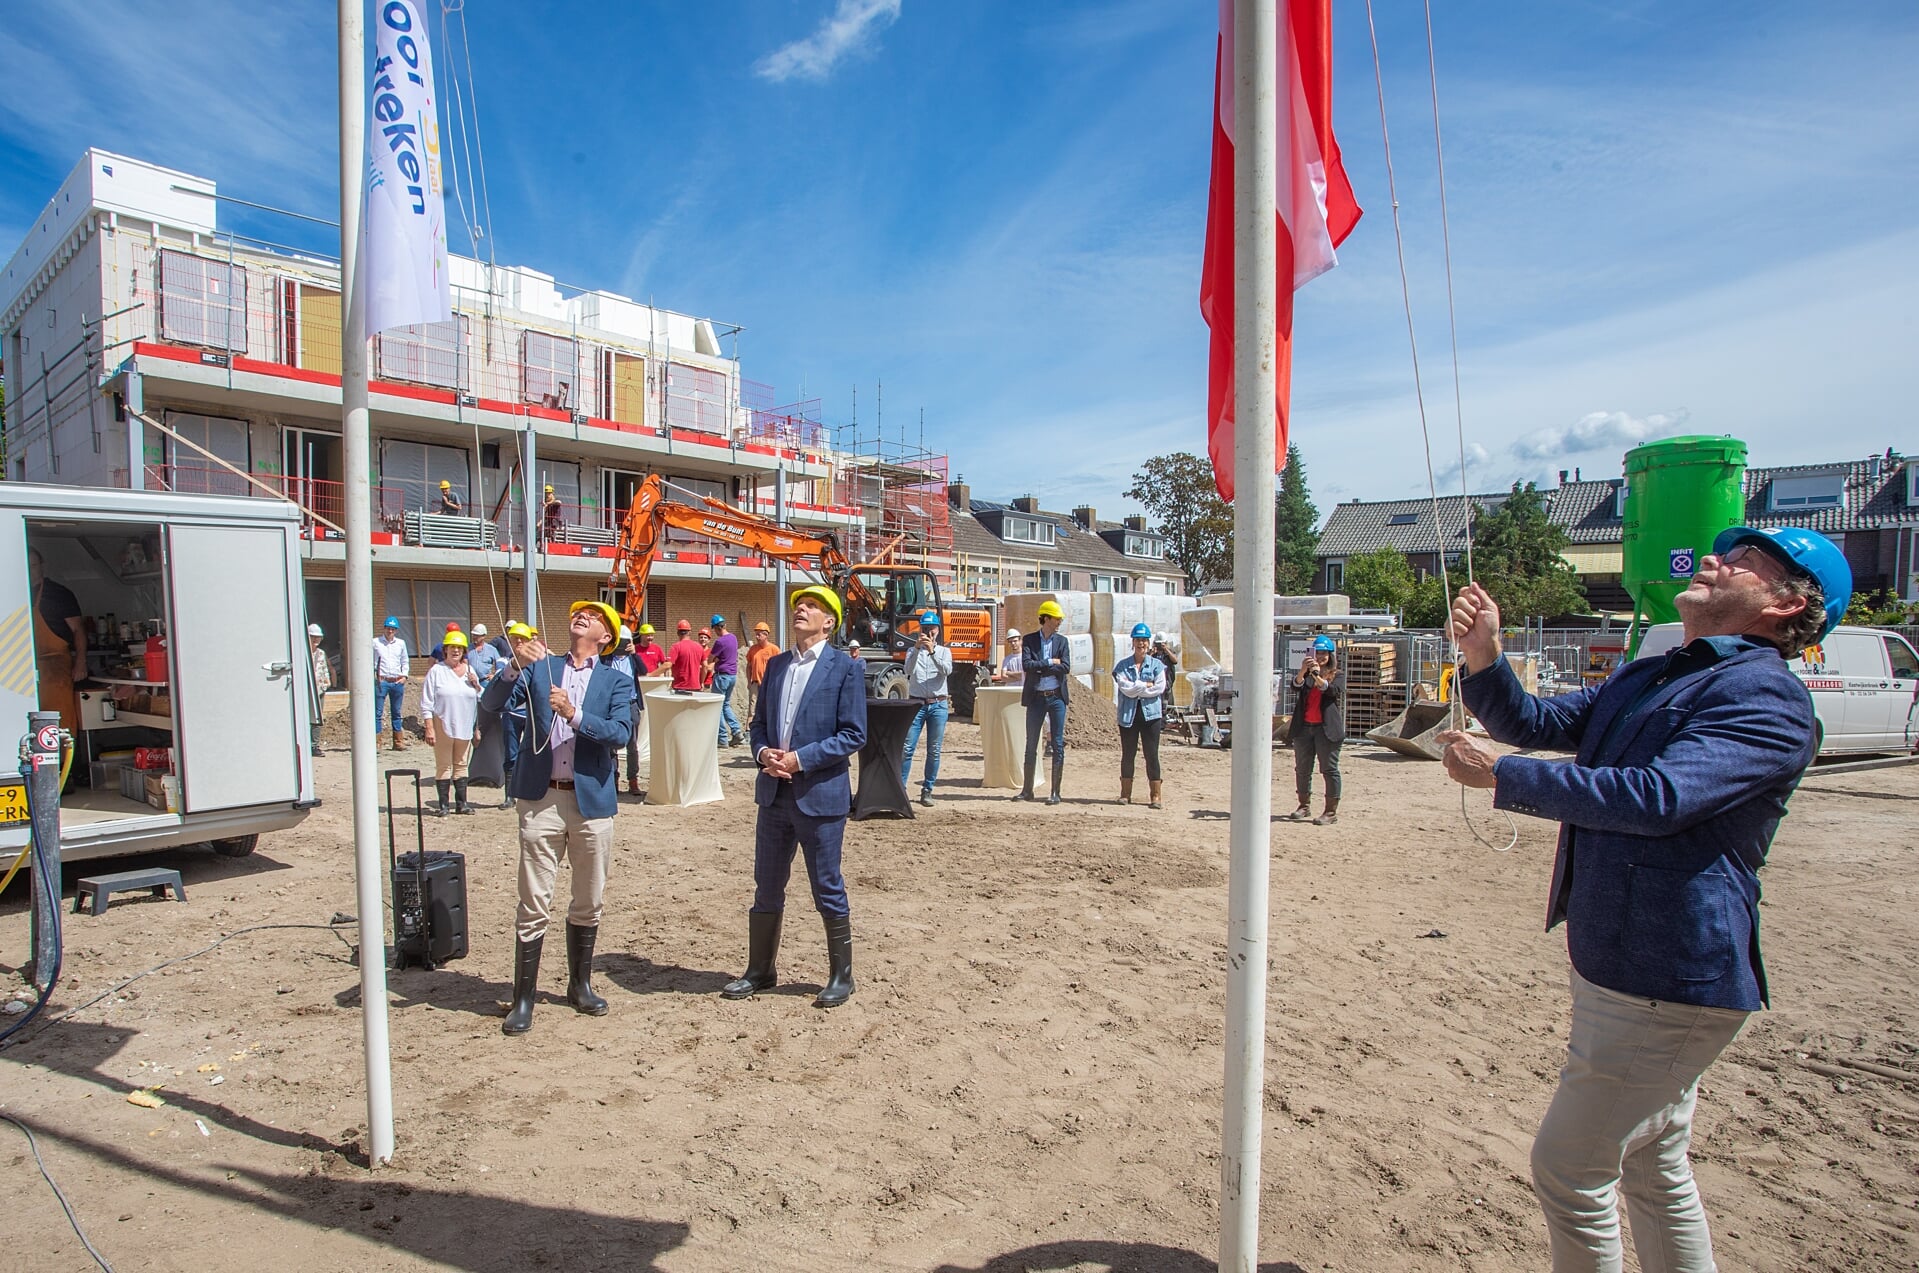 Maarten van Gessel (directeur Het Gooi en Omstreken) en Anno van der Werf (vestigingsdirecteur van Van Wijnen Harderwijk) hijsen de vlaggen, terwijl wethouder Nico Schimmel, de werklui en andere genodigden toekijken.